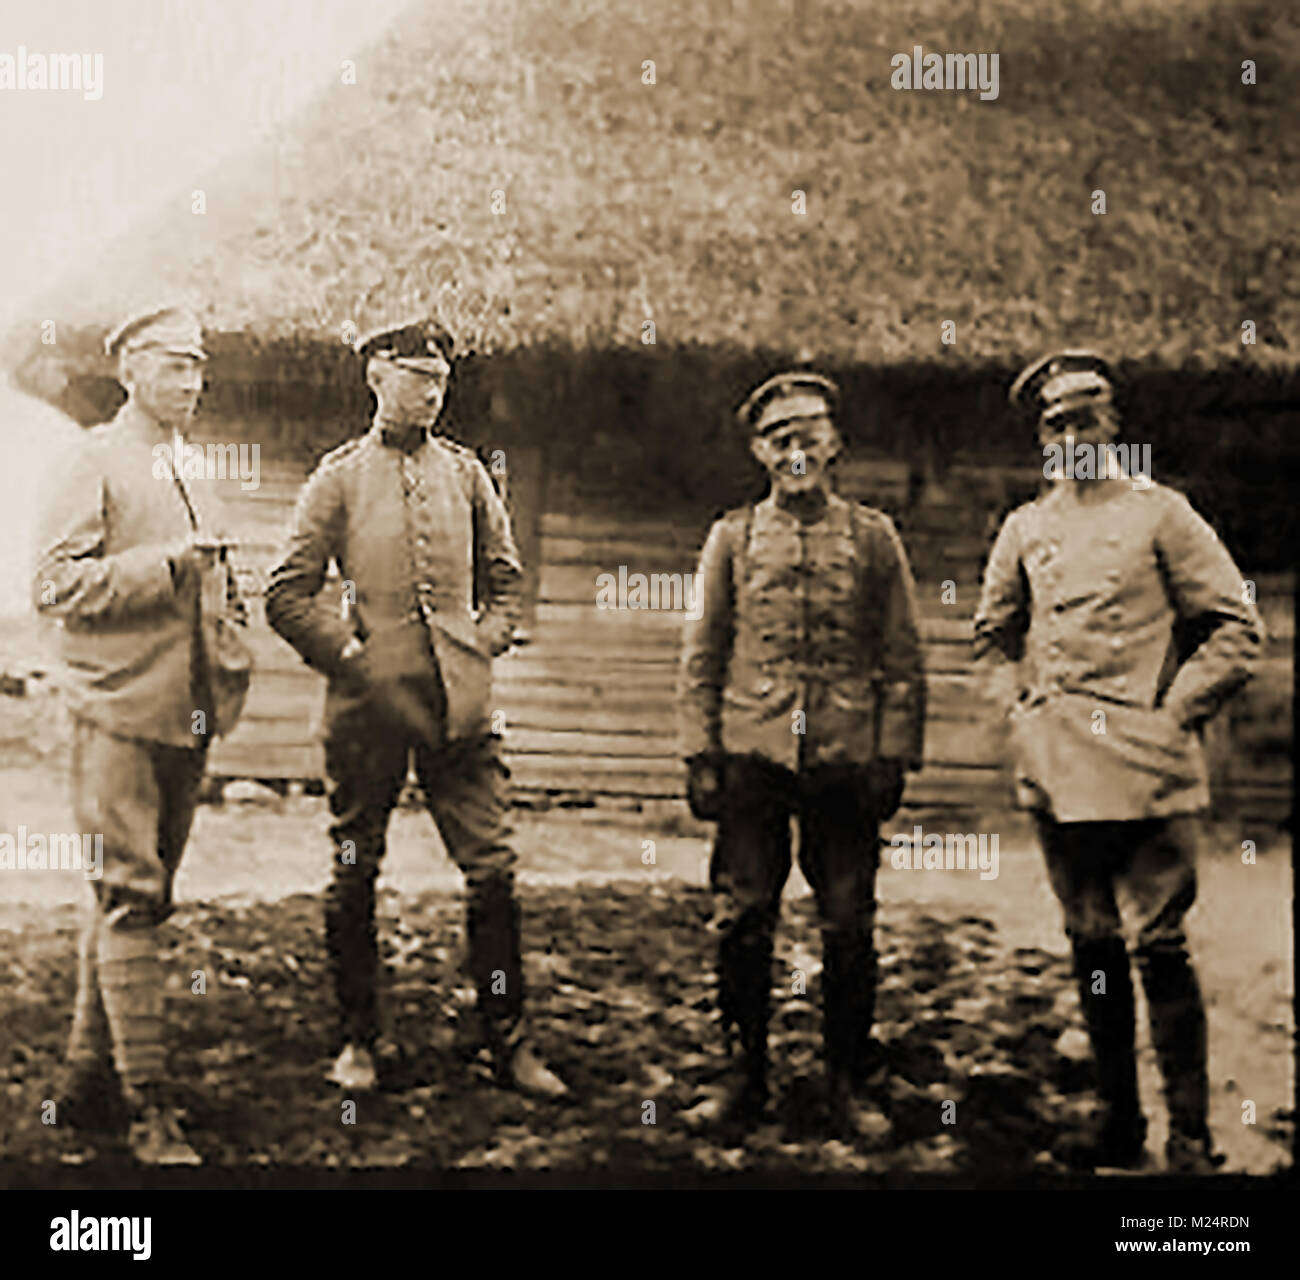 Première Guerre mondiale (1914-1918) alias la Grande Guerre ou Première Guerre mondiale - Guerre de tranchées - WW I - Un instantané de 4 officiers allemands Banque D'Images